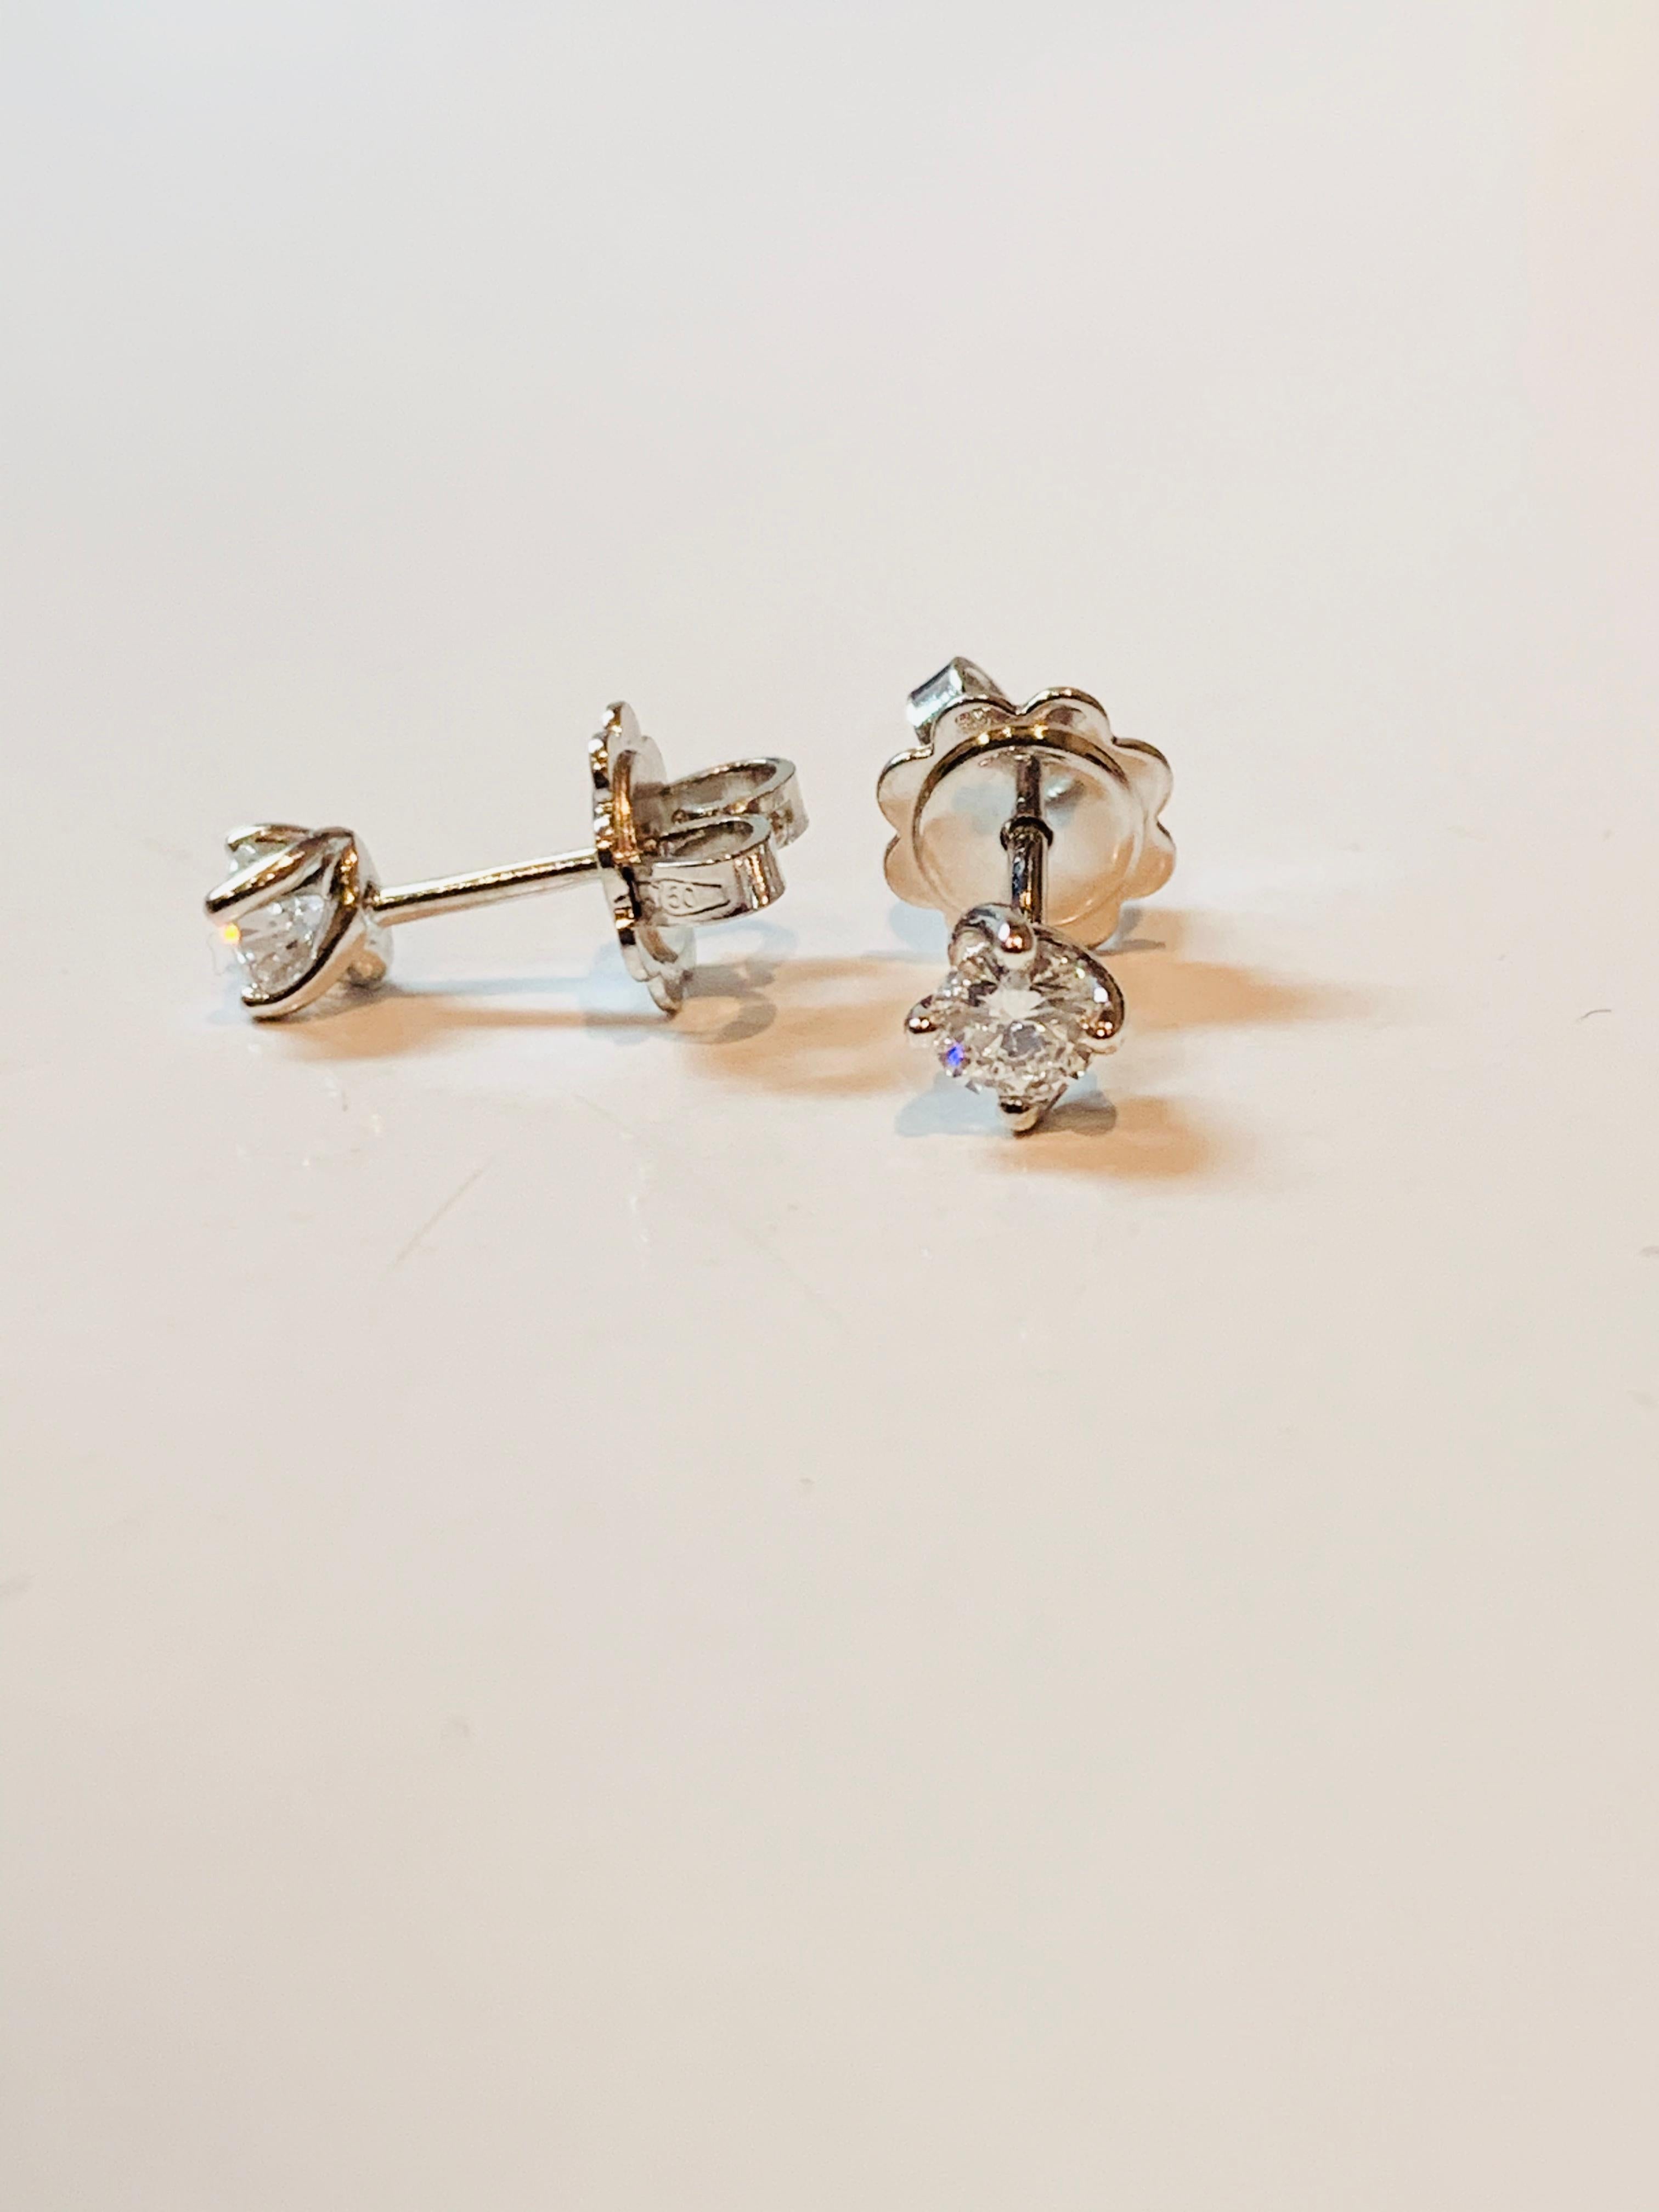 Round Cut HRD Certified 0.14 Carat Flower Diamonds Set in 18Kt White Gold Stud Earrings